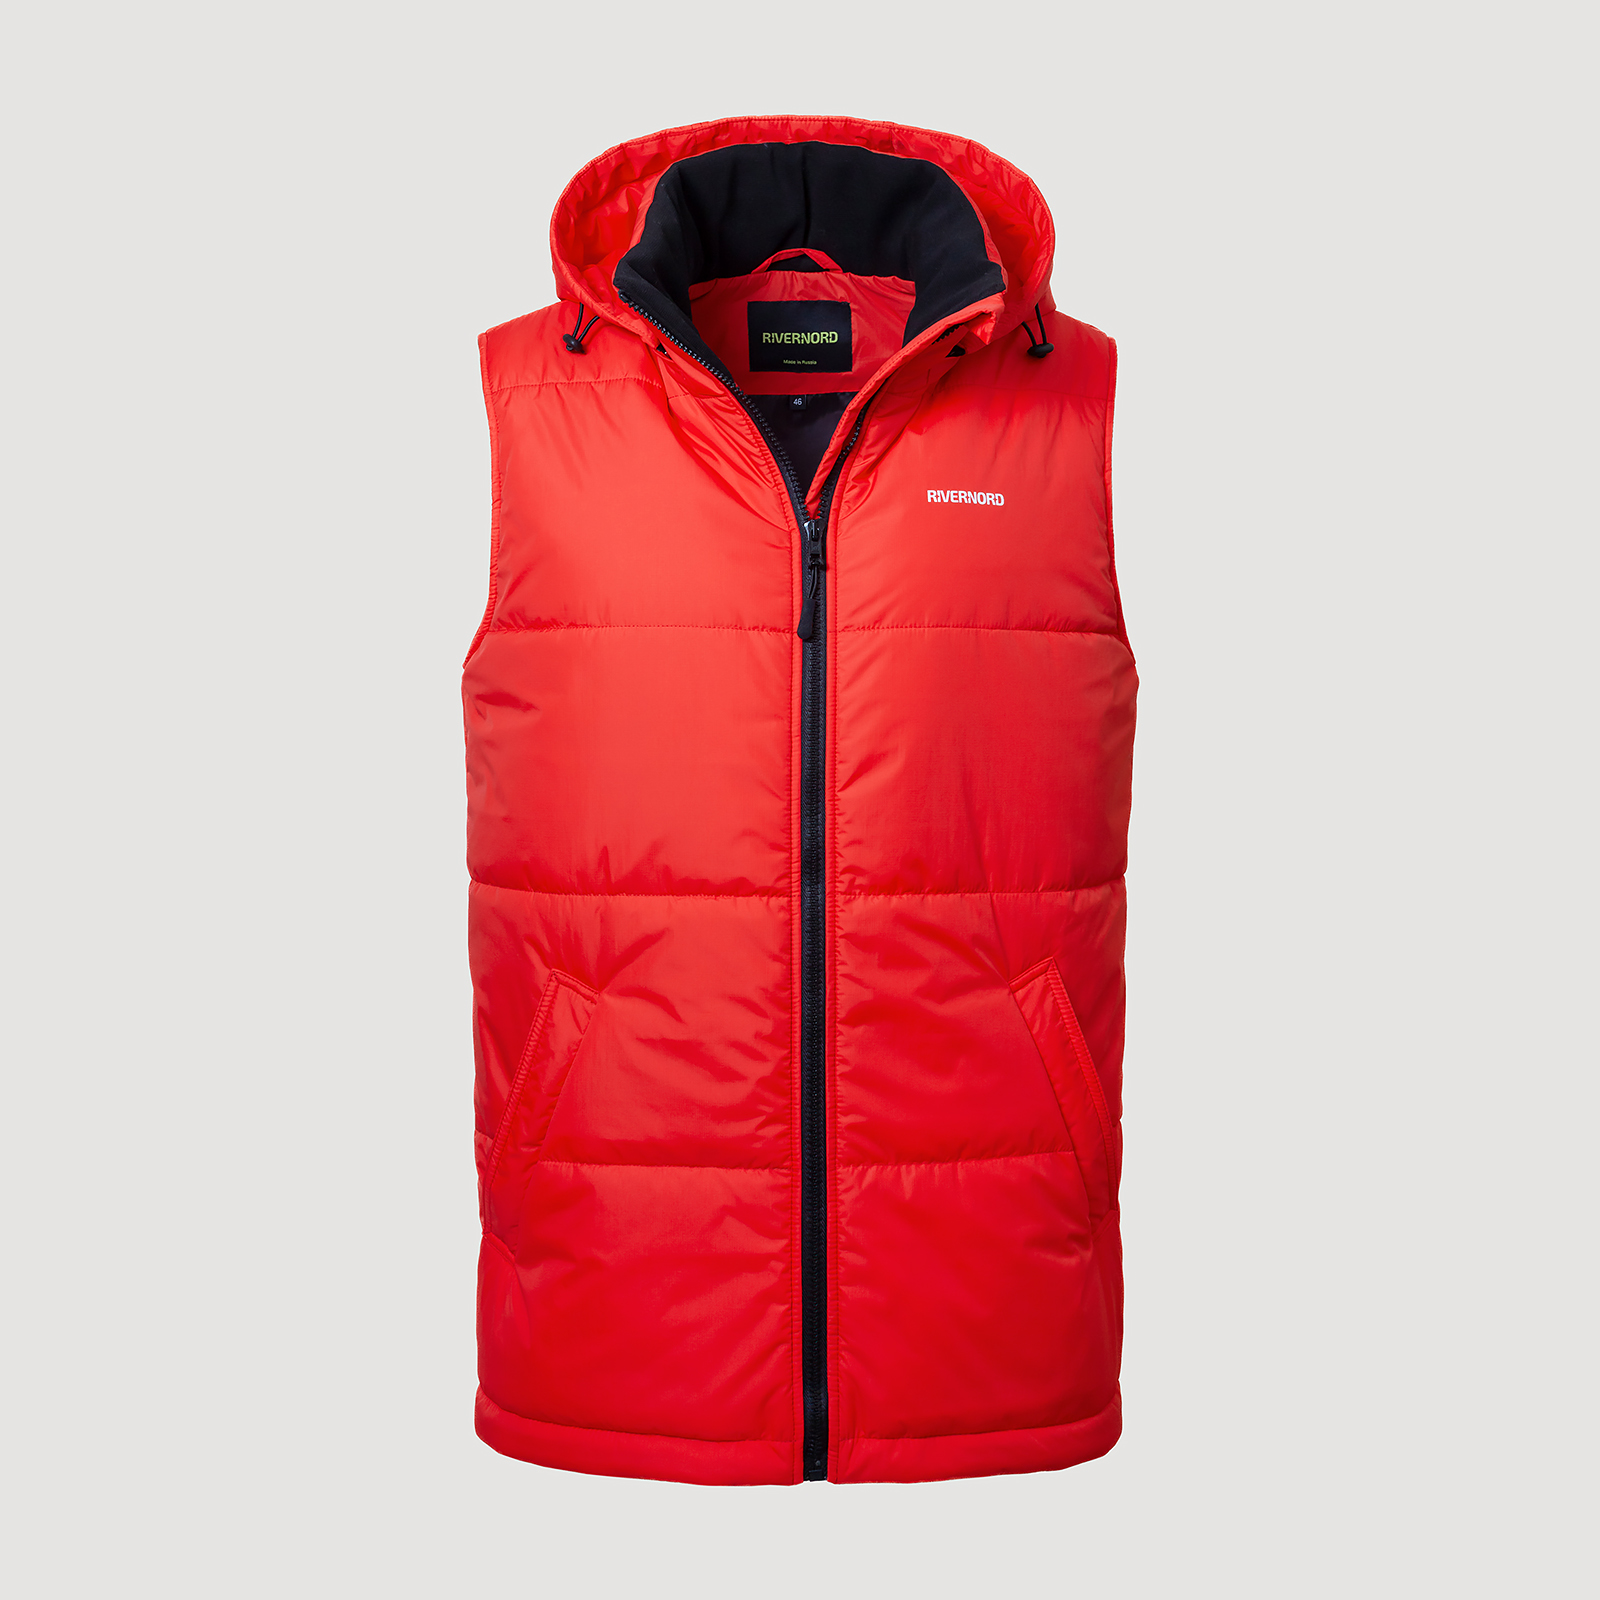 Мужской утепленный жилет Classic Winter Vest Original цвет красный